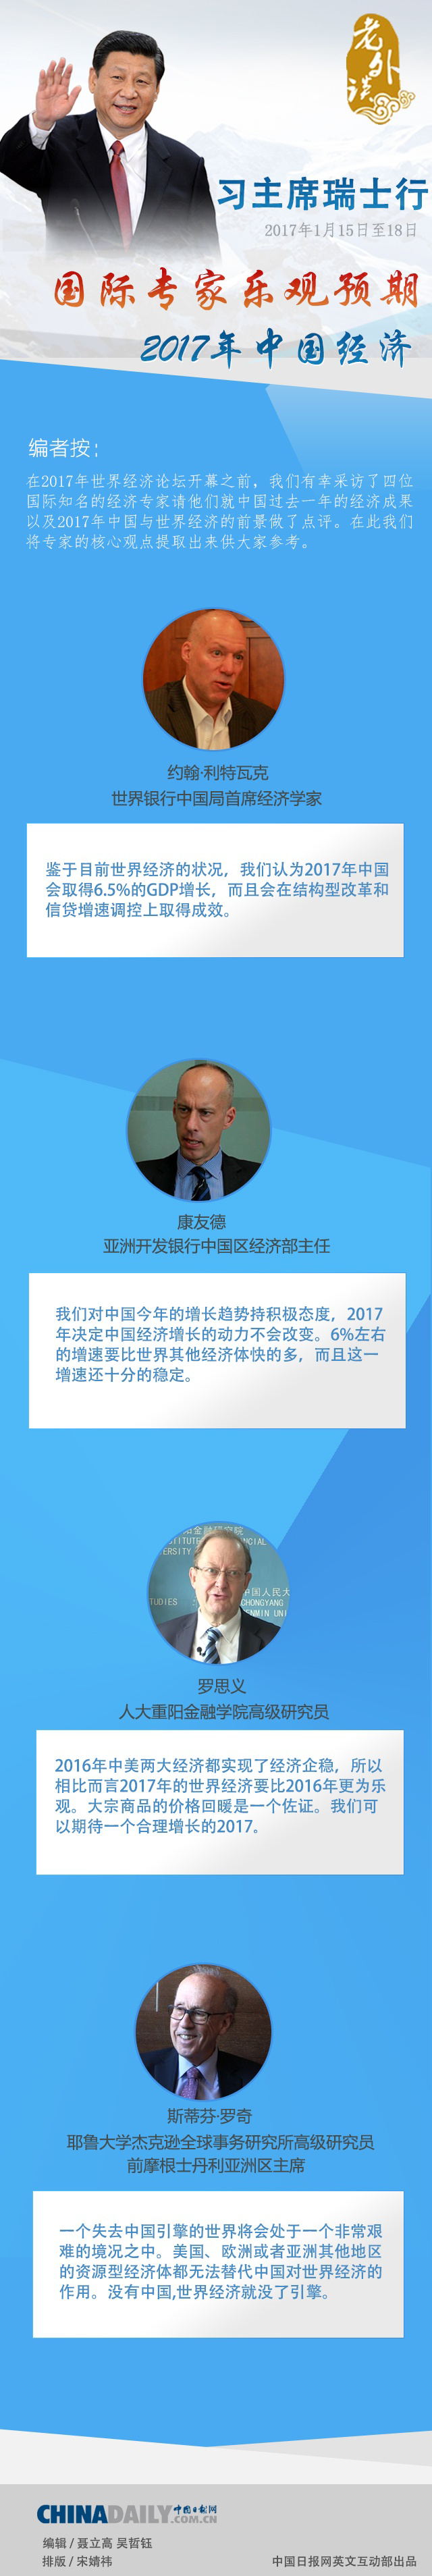 【老外谈】国际知名专家乐观预期2017年中国经济